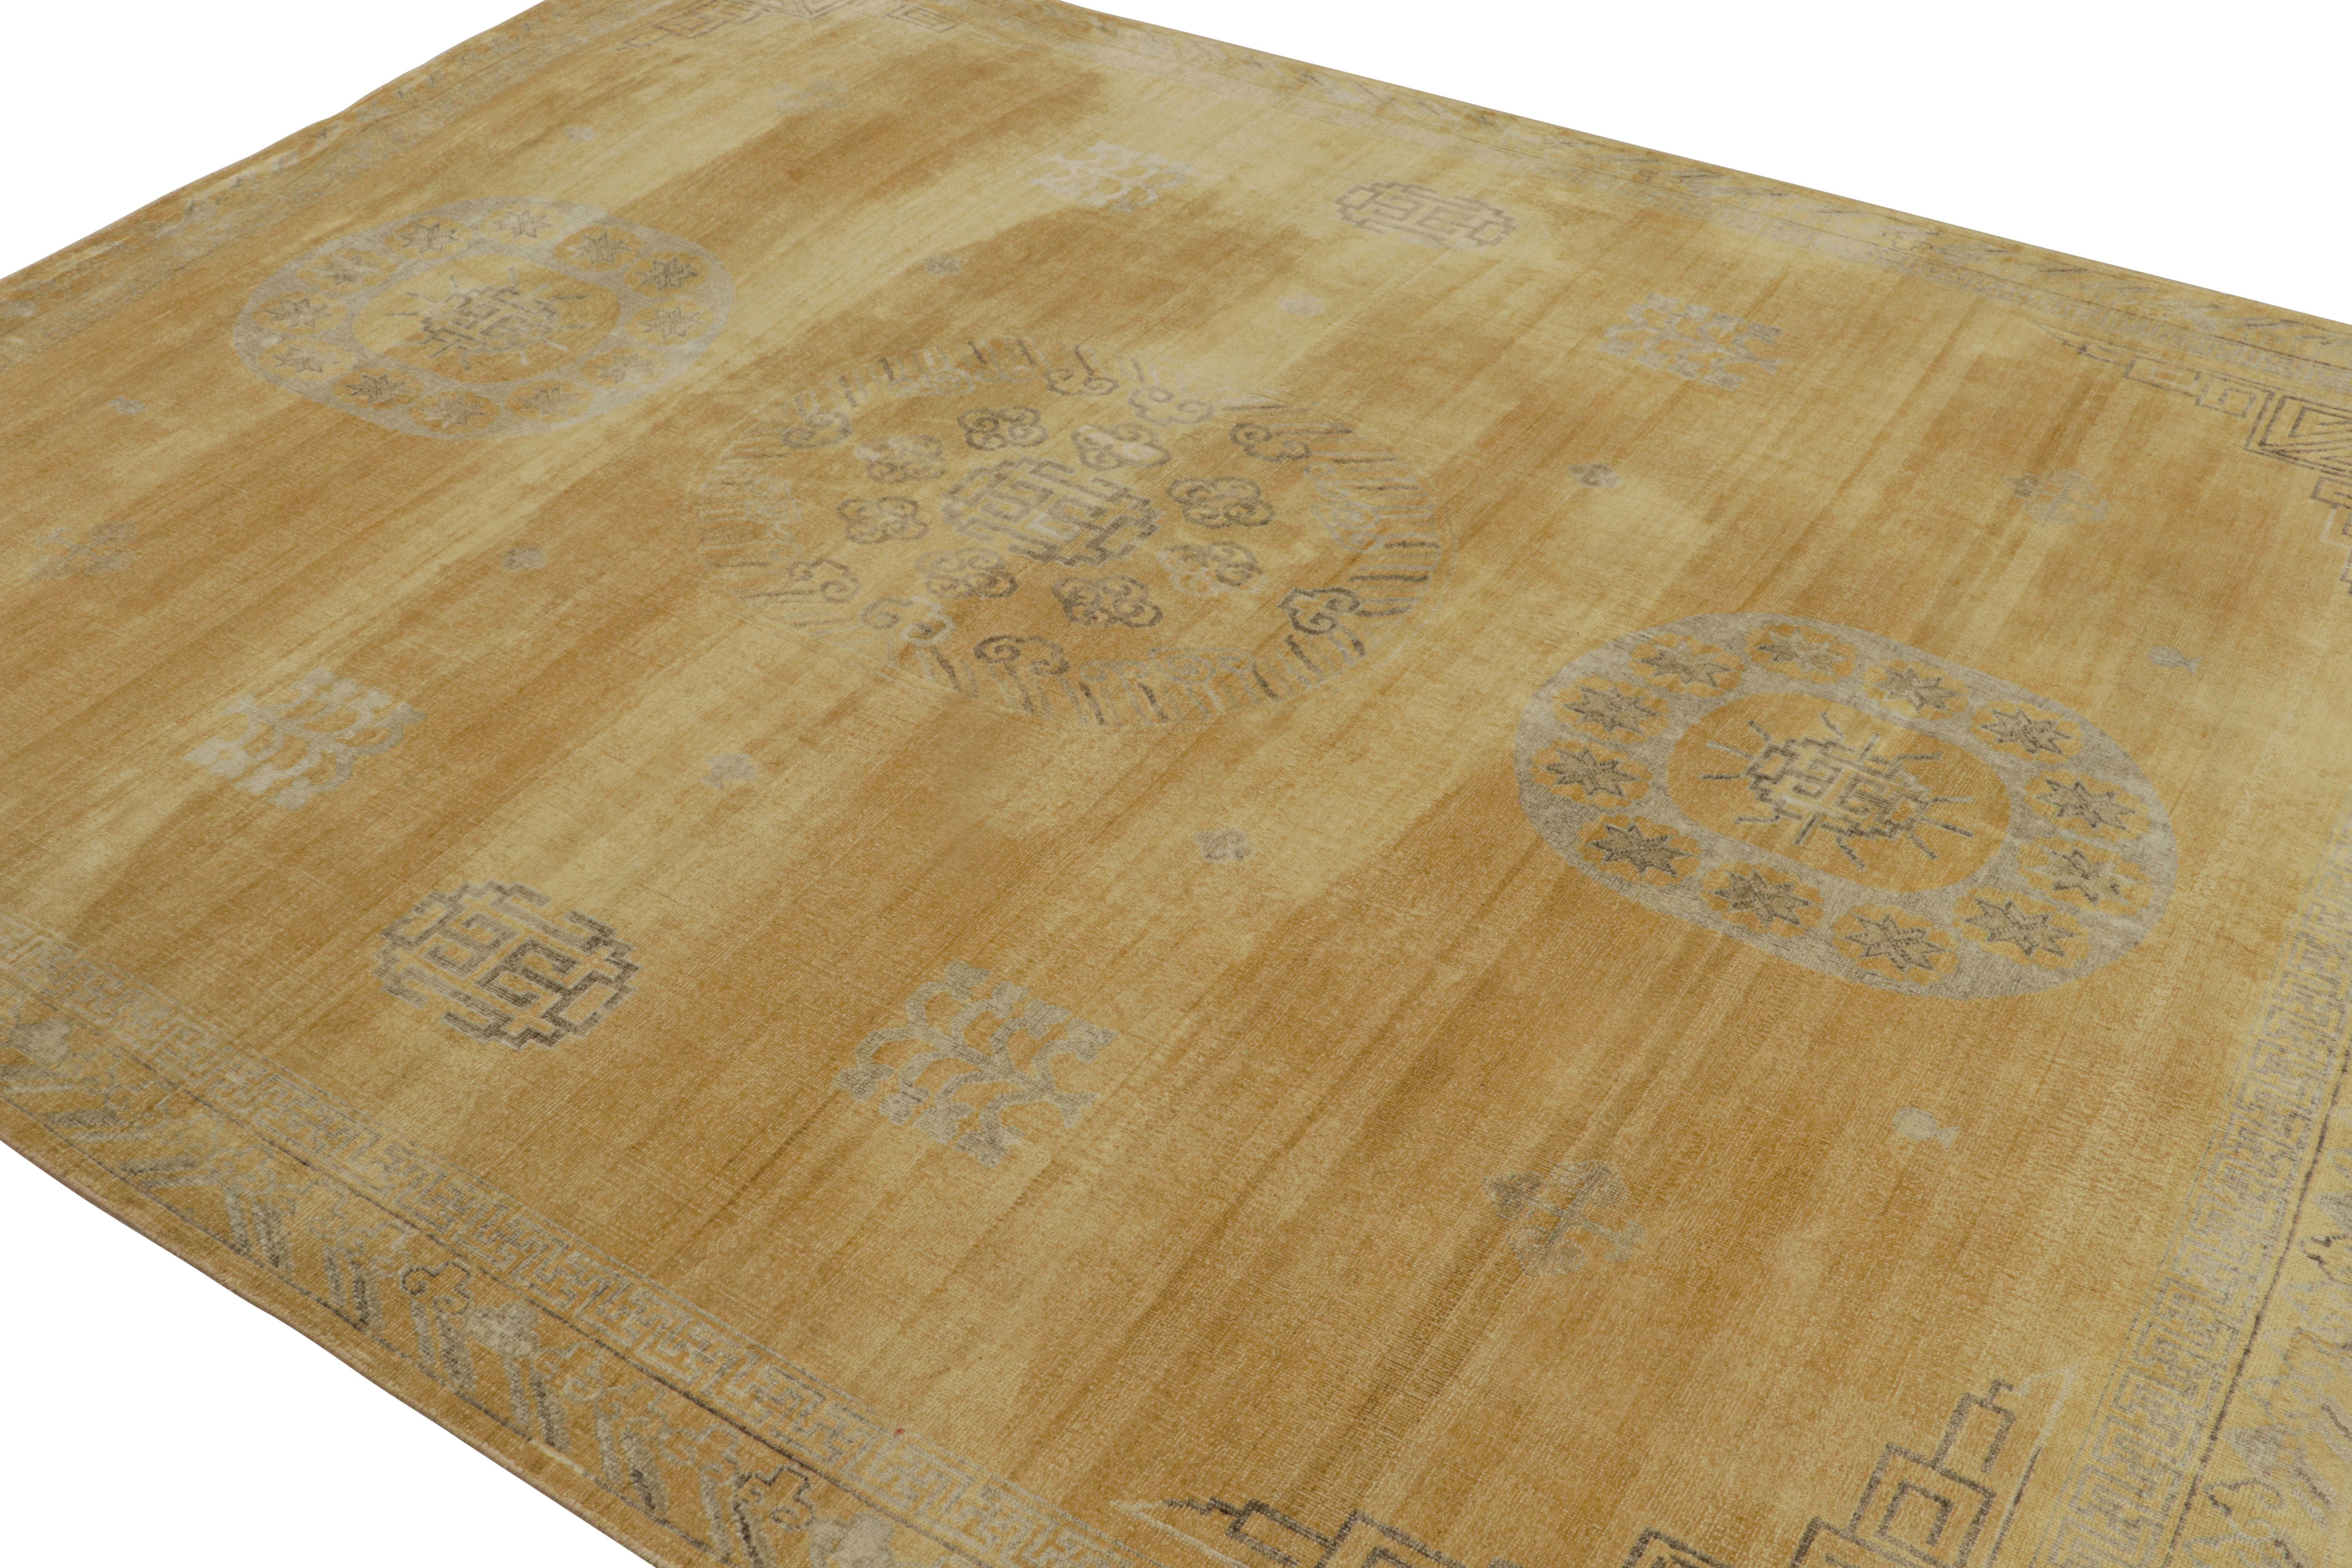 Dieser 8x10 große, handgeknüpfte Seidenteppich aus der 'Modern Classics'-Kollektion ist von den Samarkand-Teppichen aus Khotan inspiriert und zeigt Medaillons im Stil eines offenen Feldes. 

Über das Design; 

Aus unserer Modern